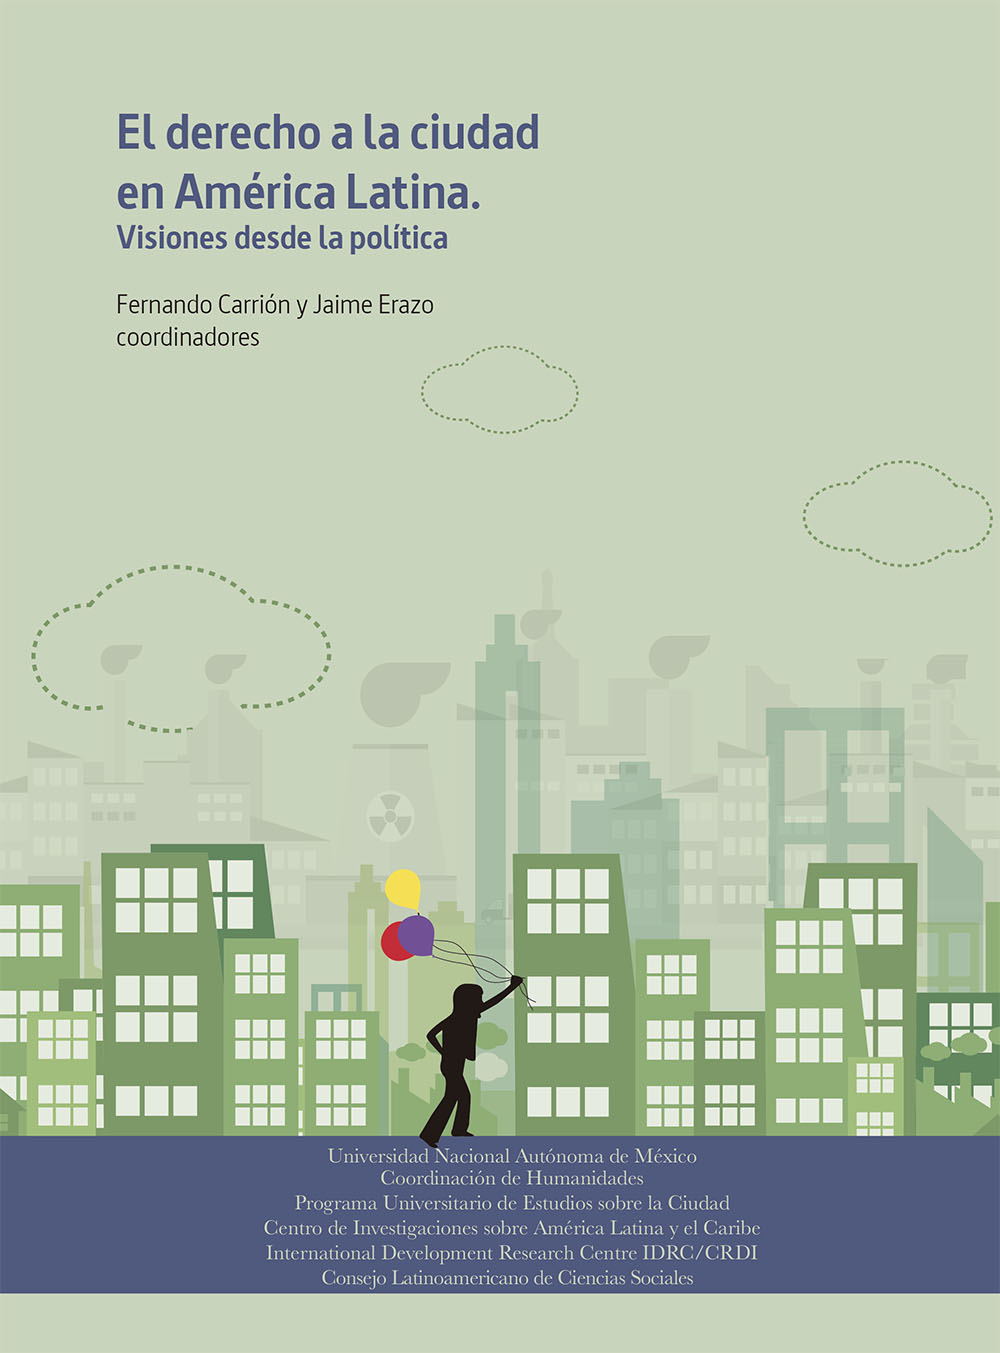 El derecho a la ciudad en América Latina: visiones desde la política